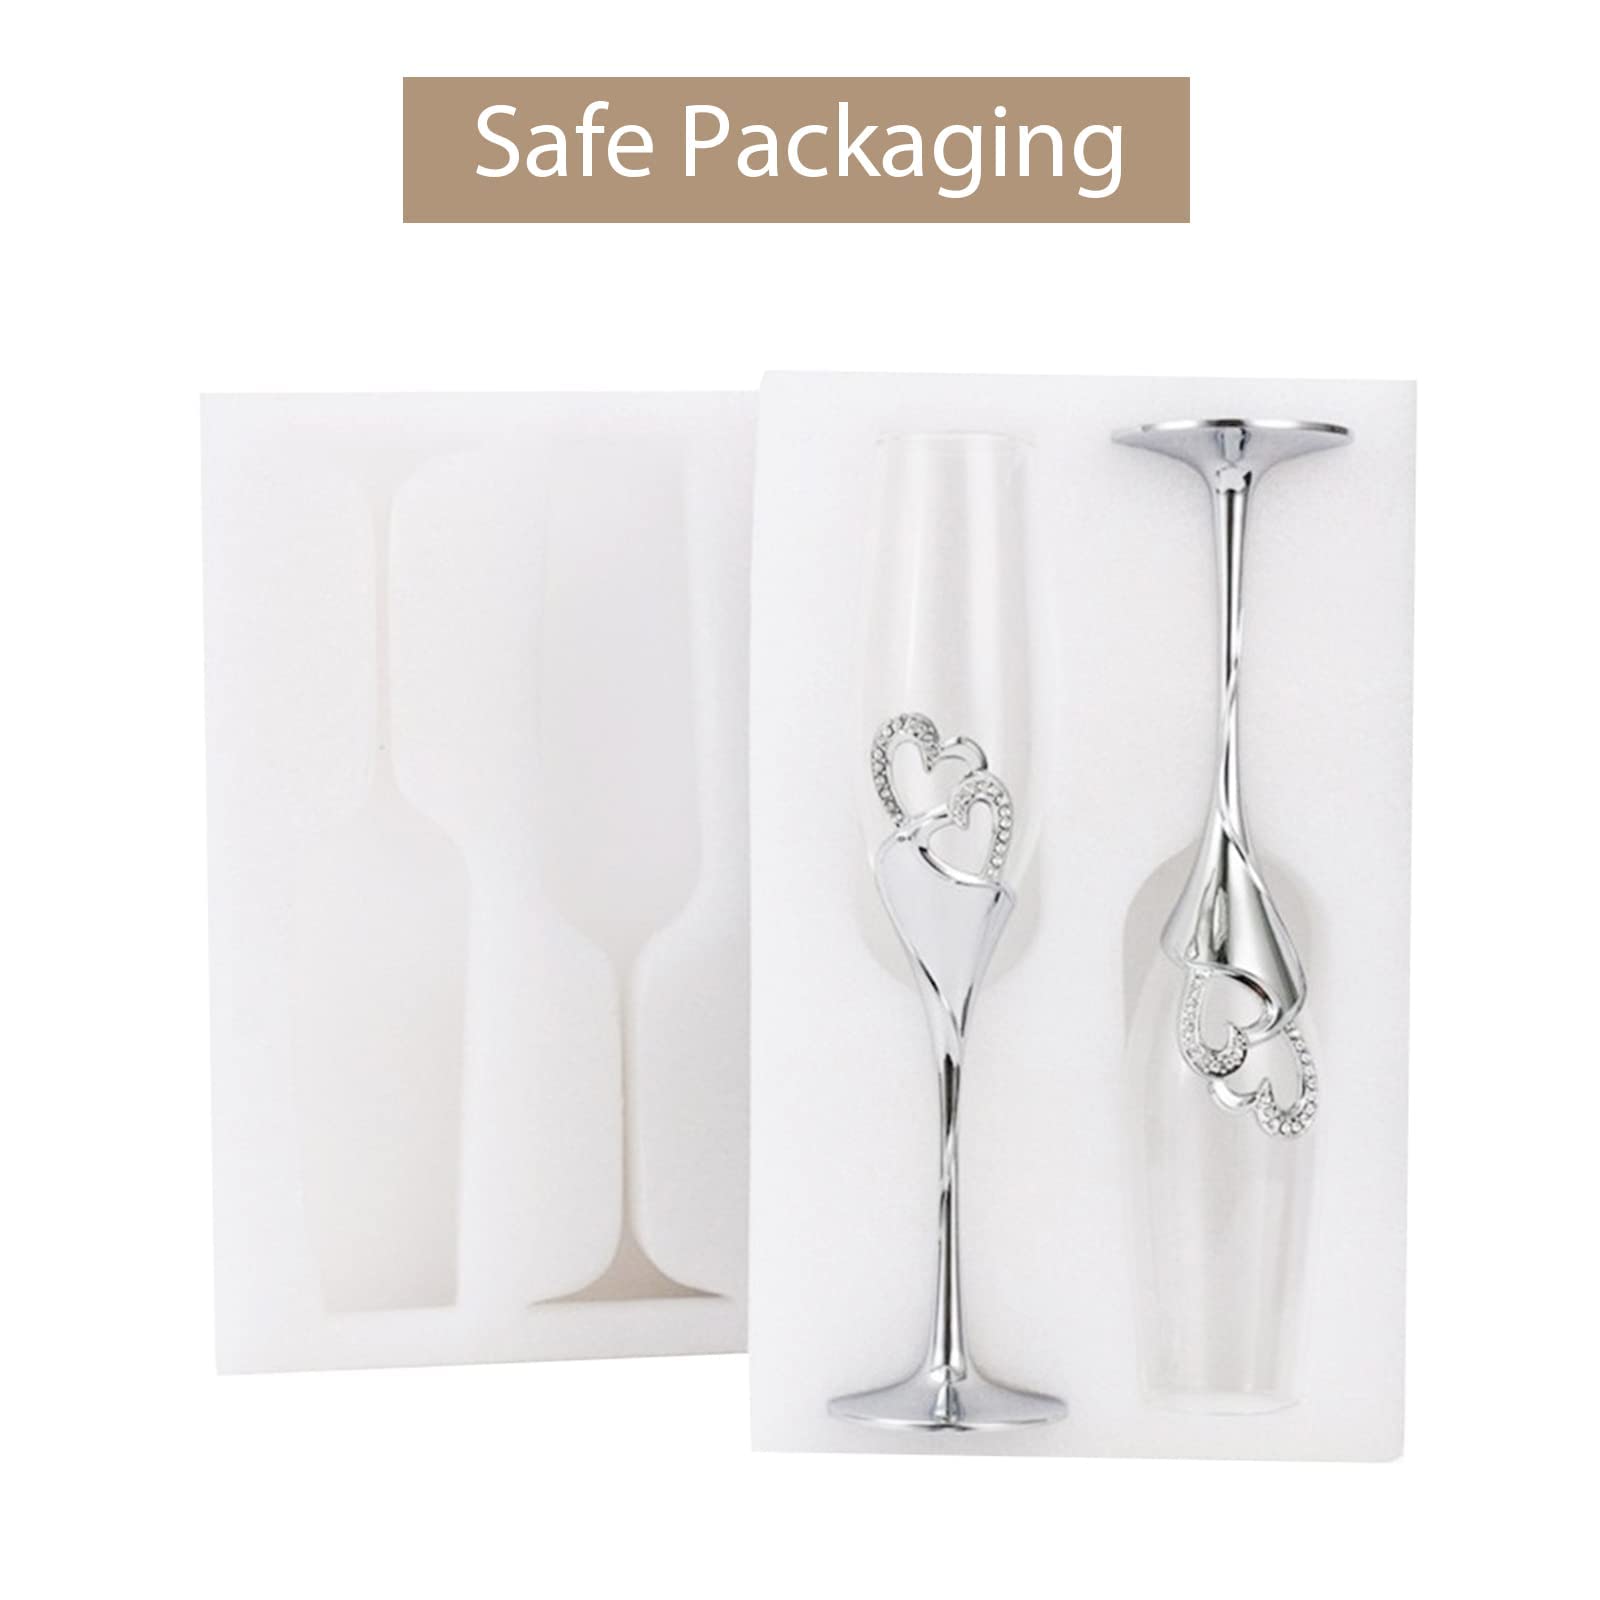 Safe packaging